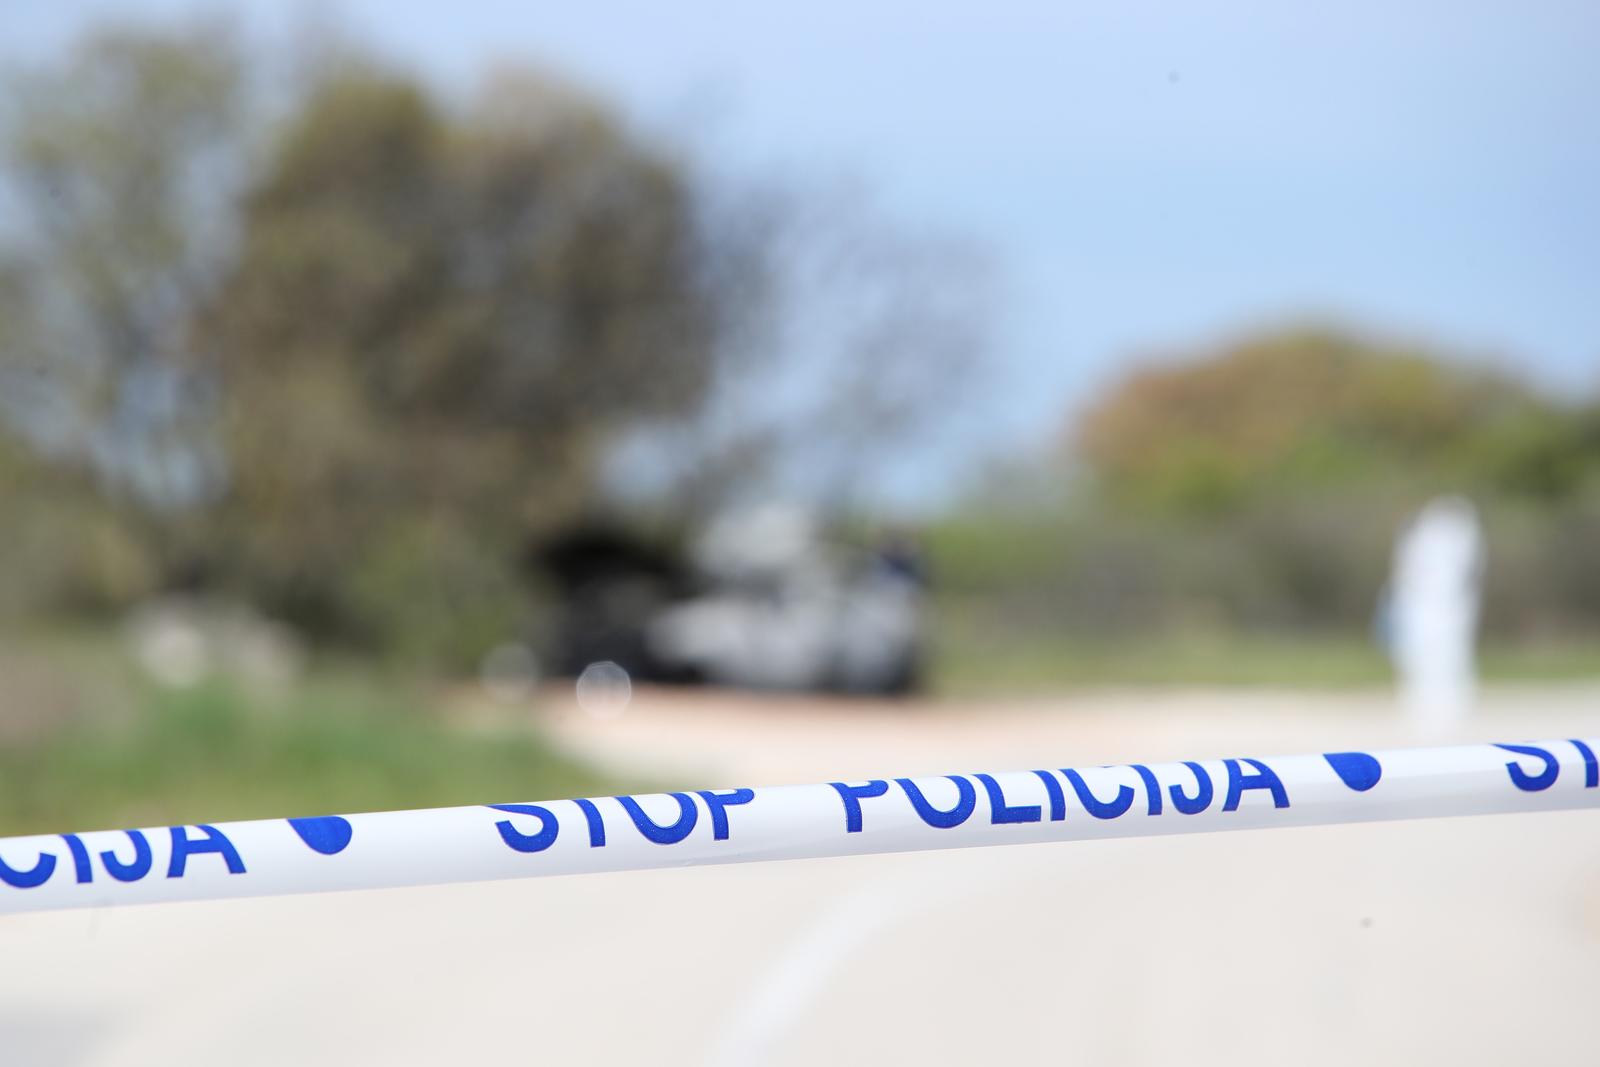 20.04.2023., Zadar - Na lokalnoj cesti u Lovincu na automobilu je izbio pozar. Automobil je u potpunosti izgorio, a u njemu je pronadjena jedna smrtno stradala osoba. Photo: Sime Zelic/PIXSELL